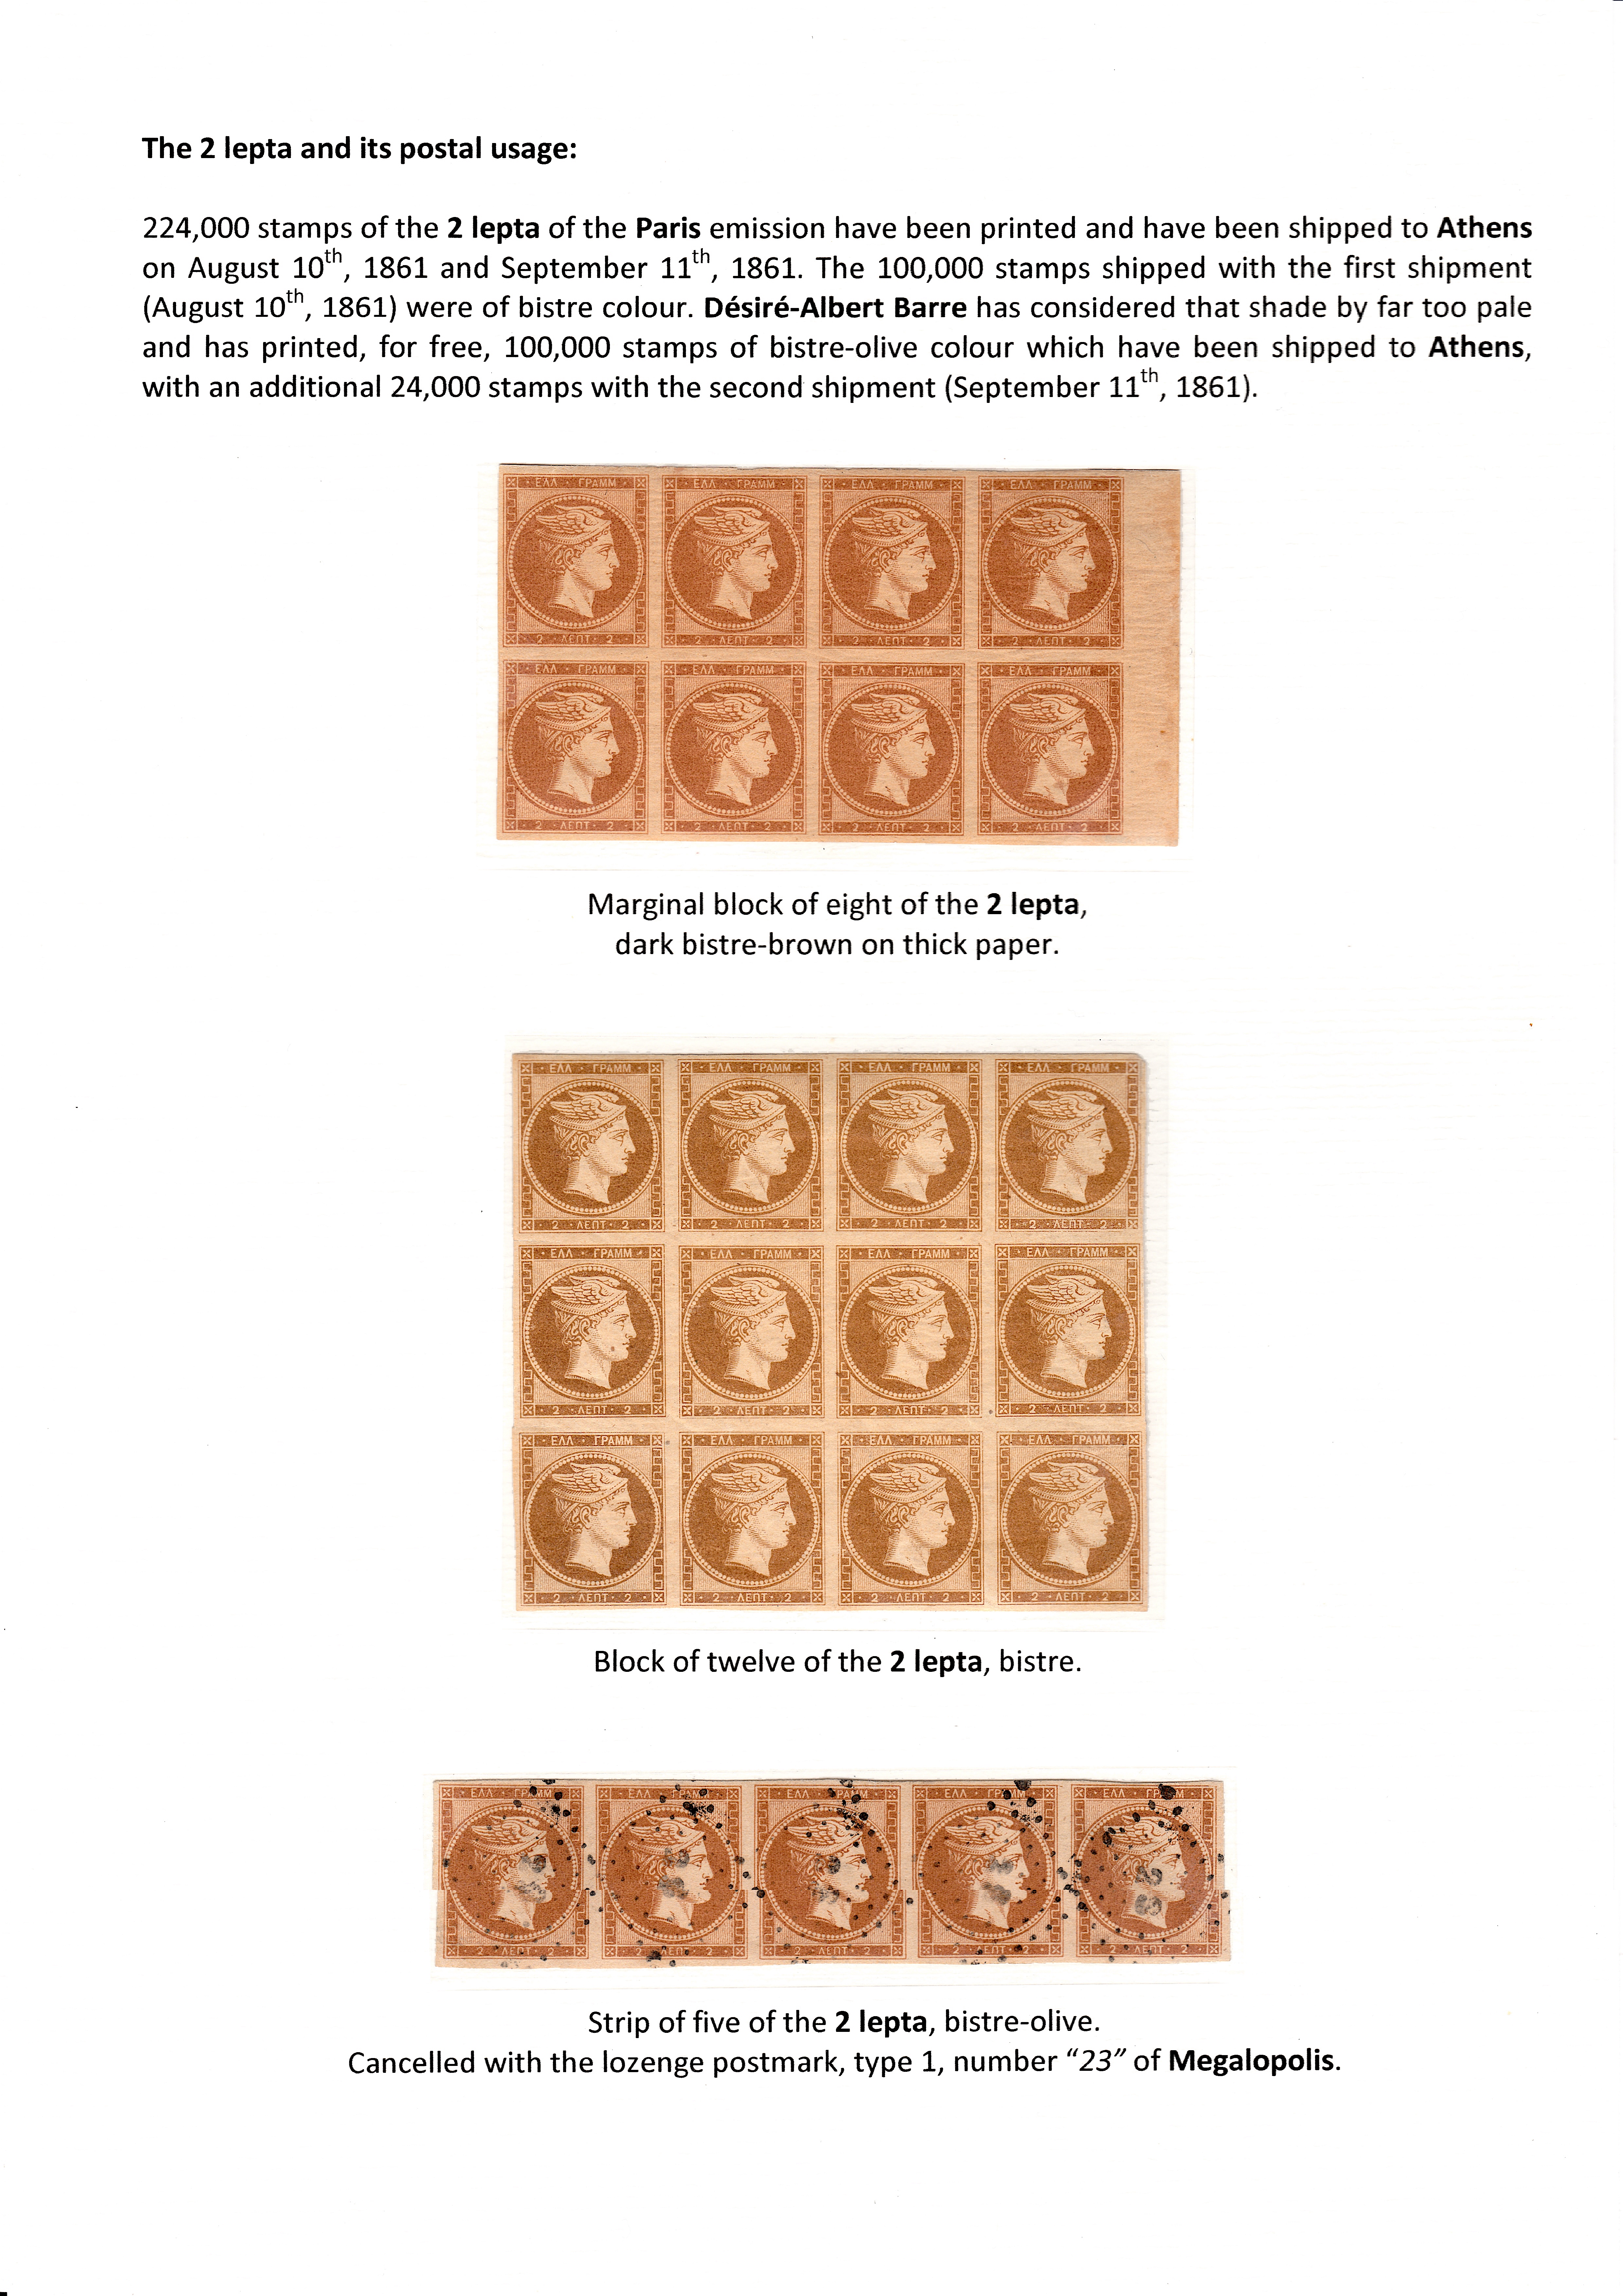 La fabrication et l���utilisation postale des tirages de Paris de la grosse t��te d���Herm��s de Gr��ce��� p. 27